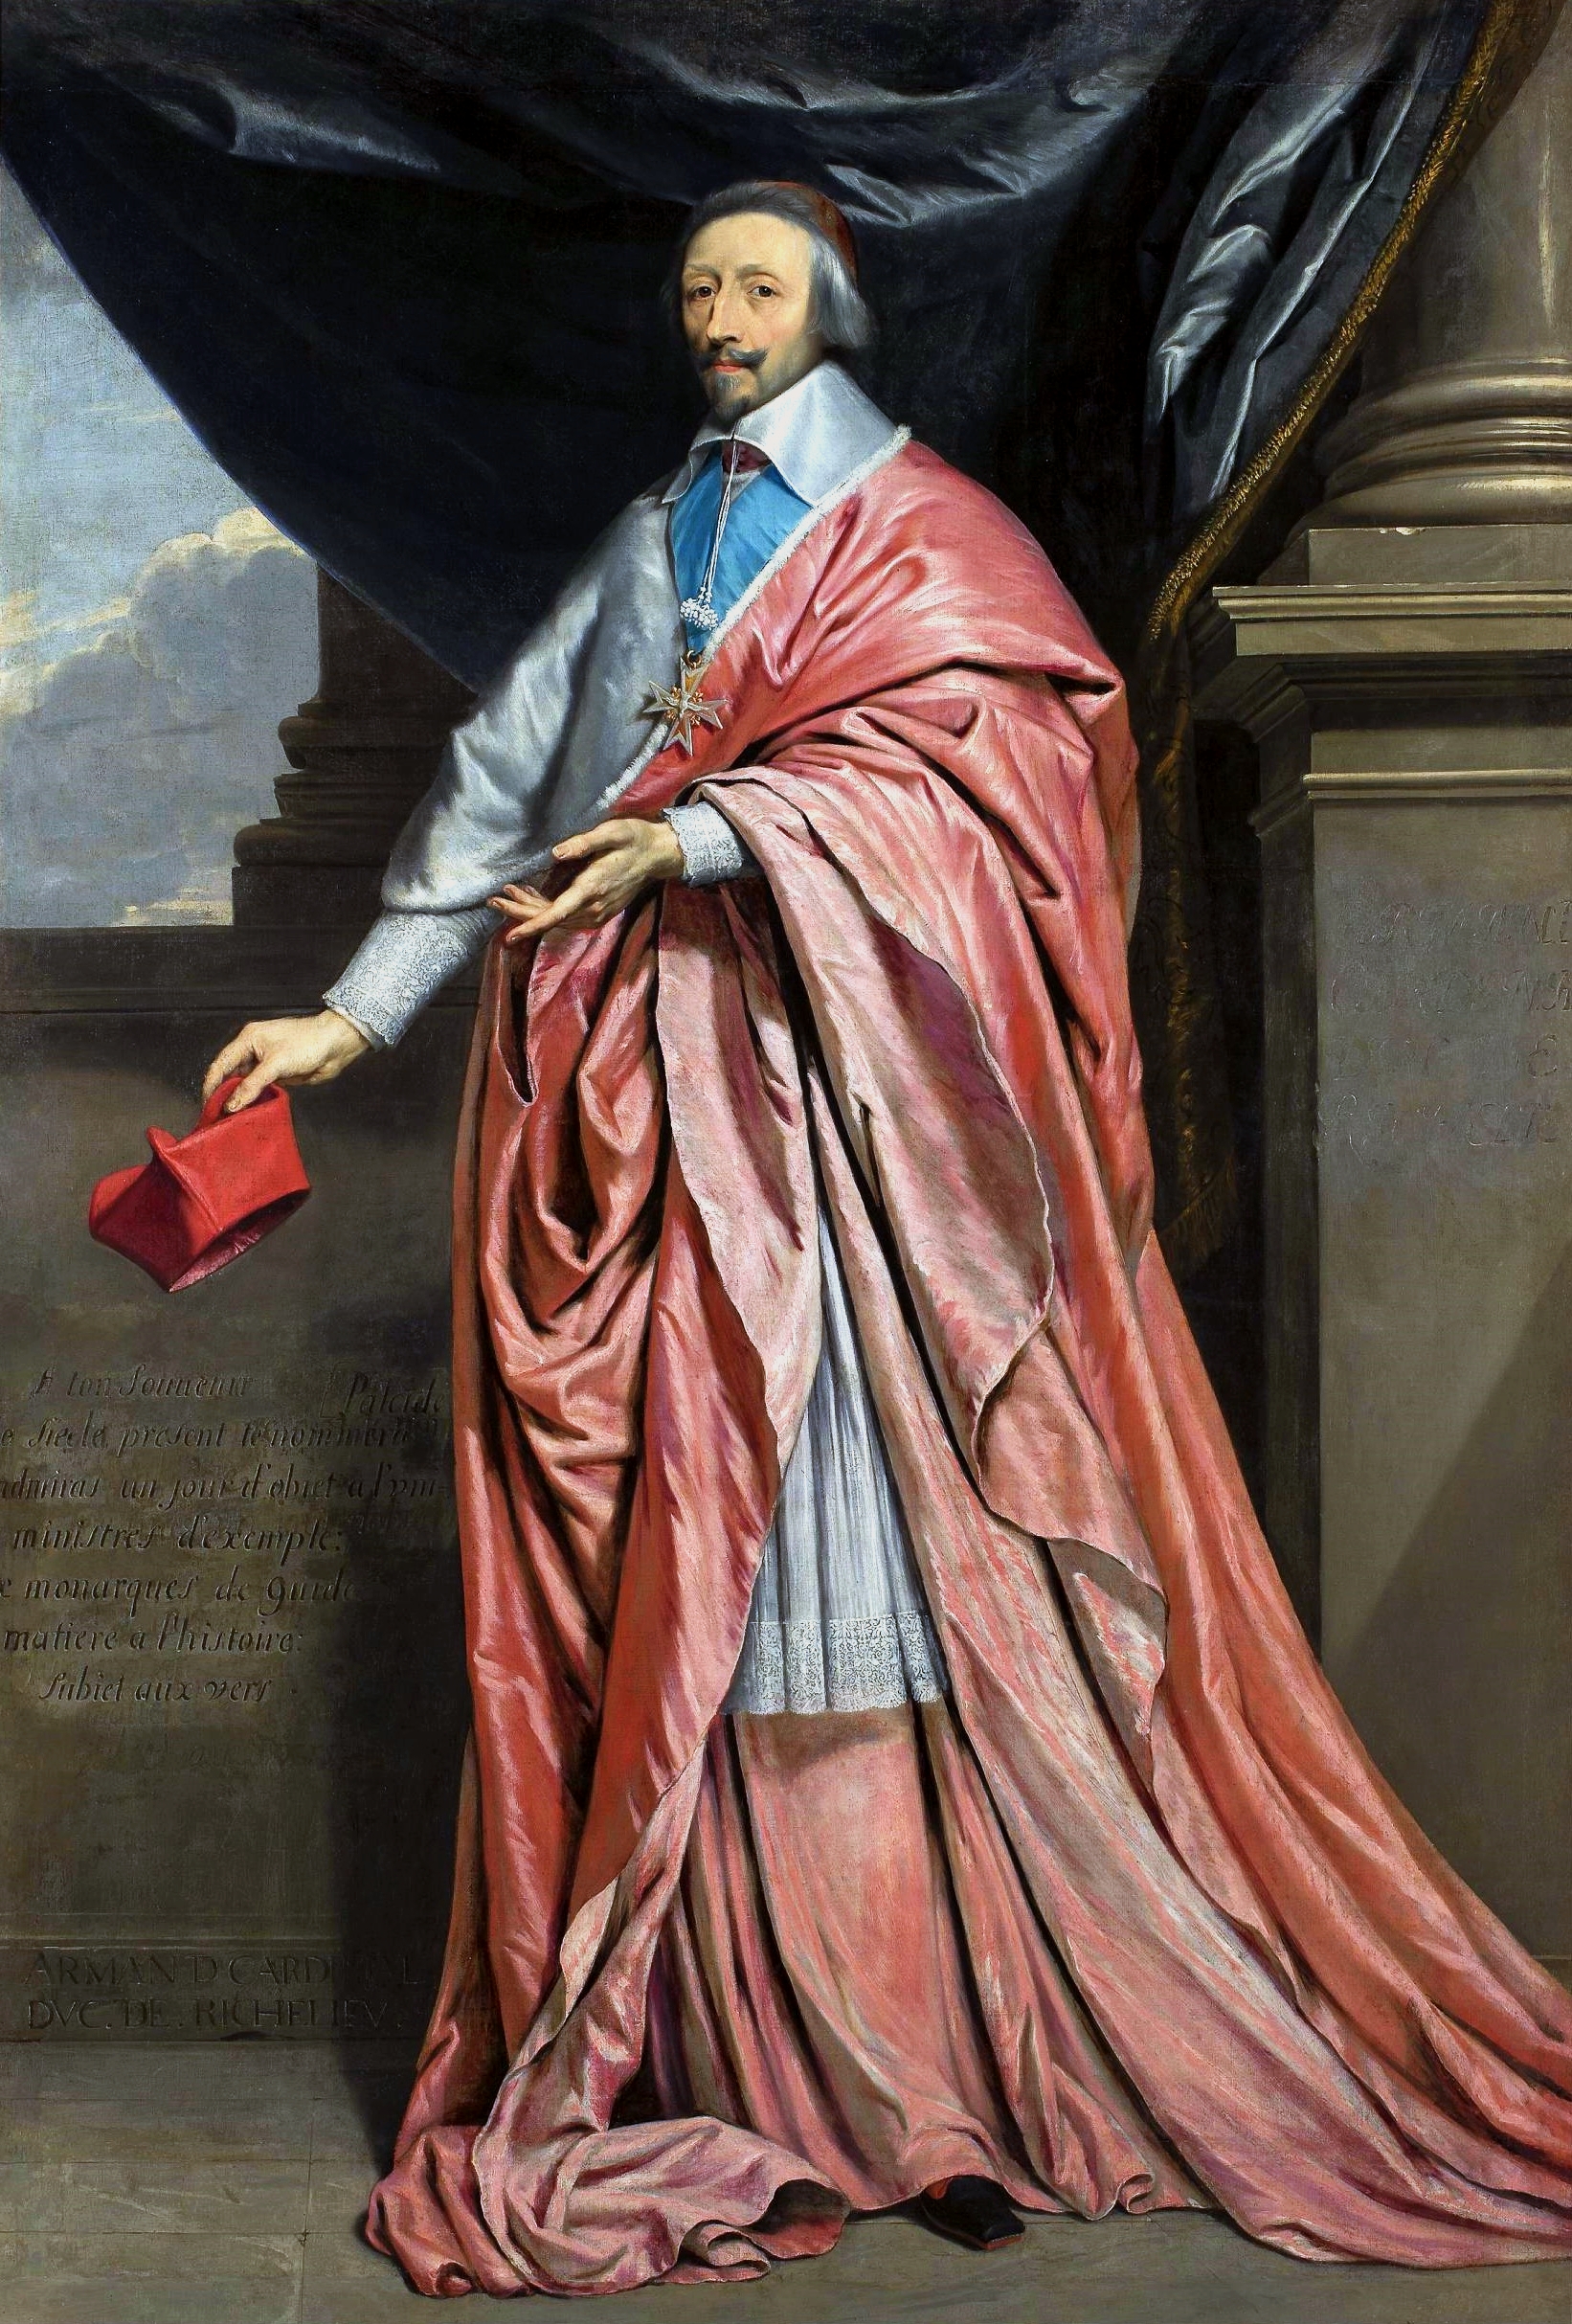 Ritratto del Cardinale Richelieu by Philippe de Champaigne - circa 1640 - 225 × 156 cm 